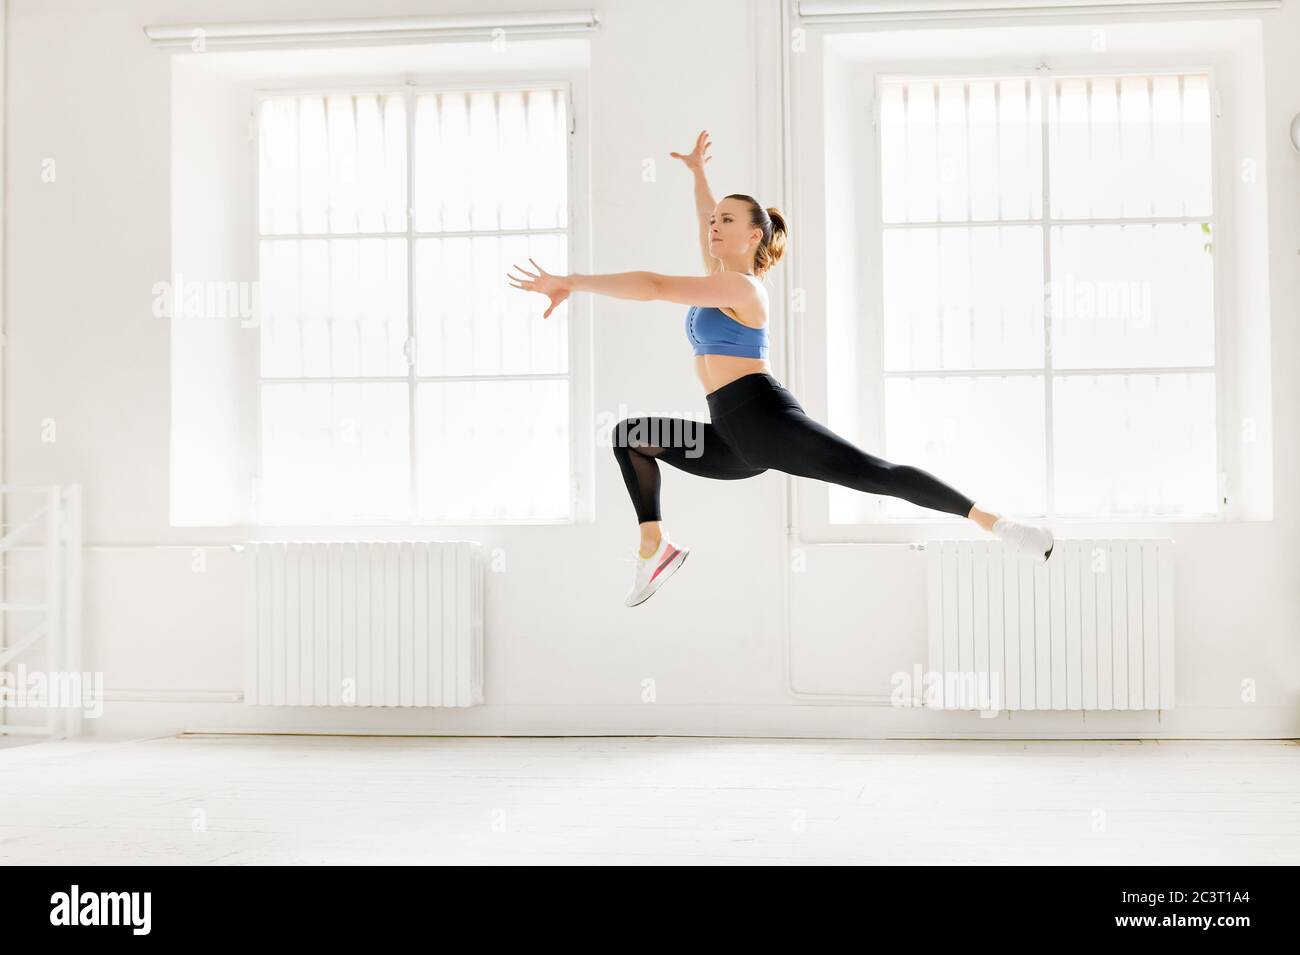 Femme exécutant un saut gymnastique enjambé en bondissant gracieusement dans l'air avec les bras étirés dans une salle de gym haute clé dans un conce de santé et de forme physique Banque D'Images